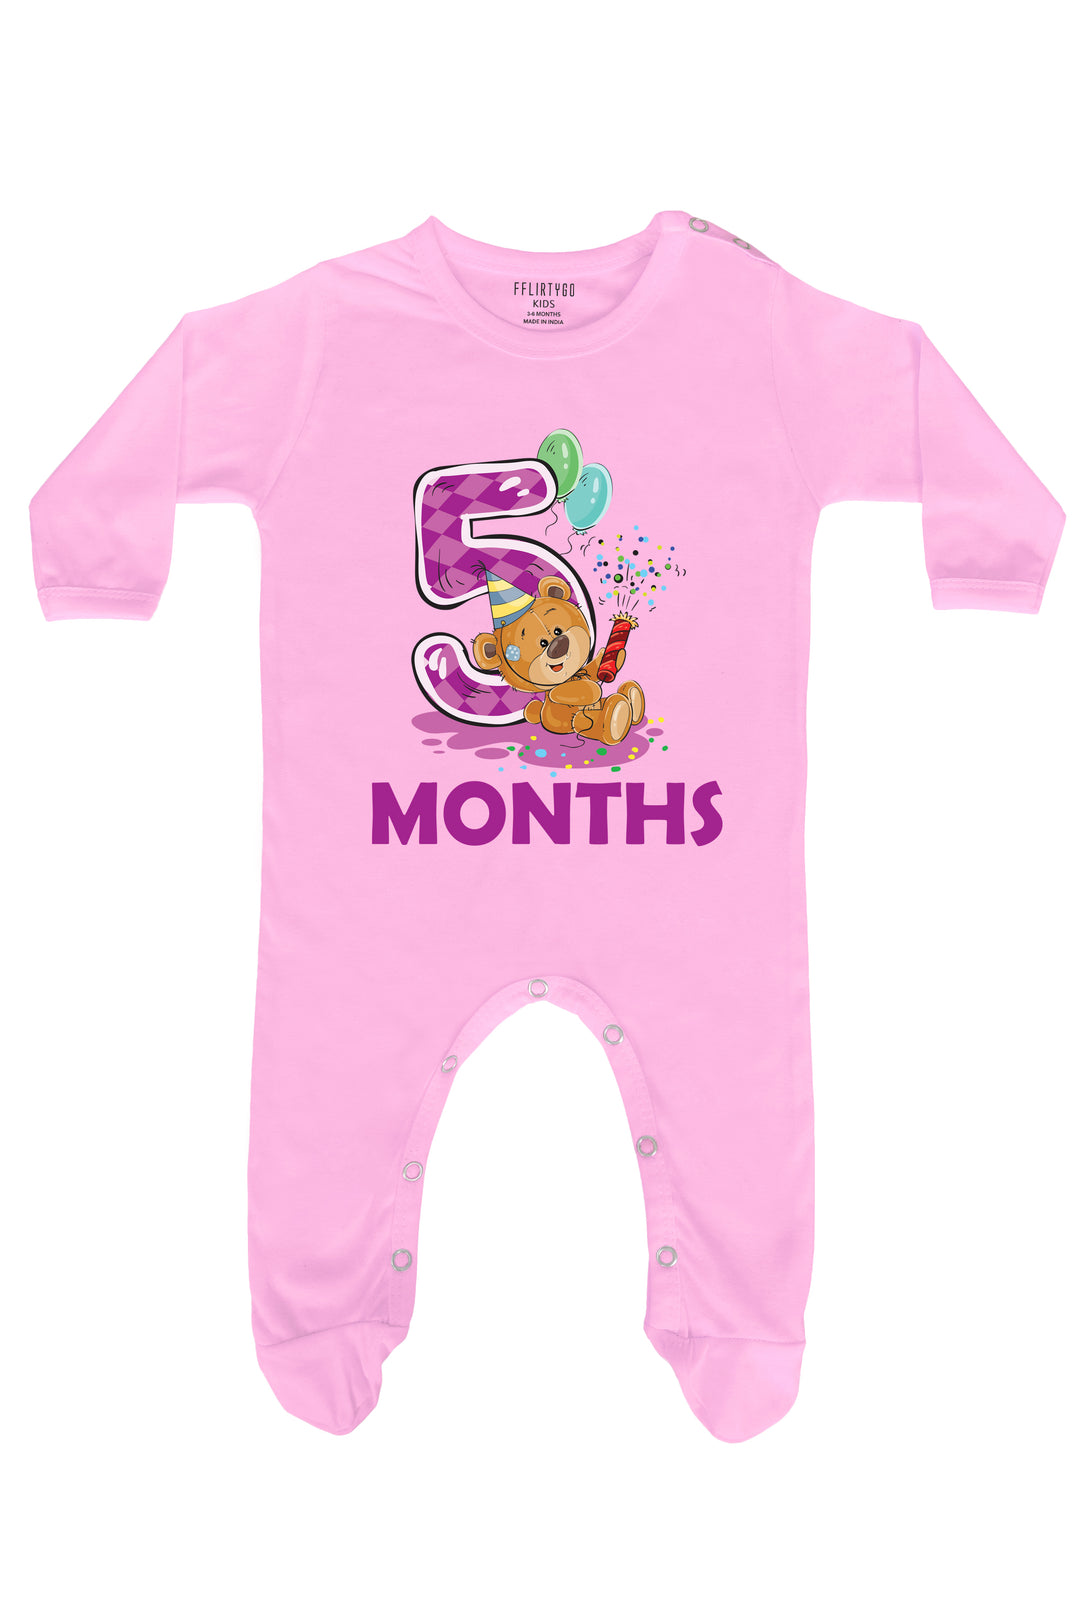 Five Months Milestone Baby Romper | Onesies